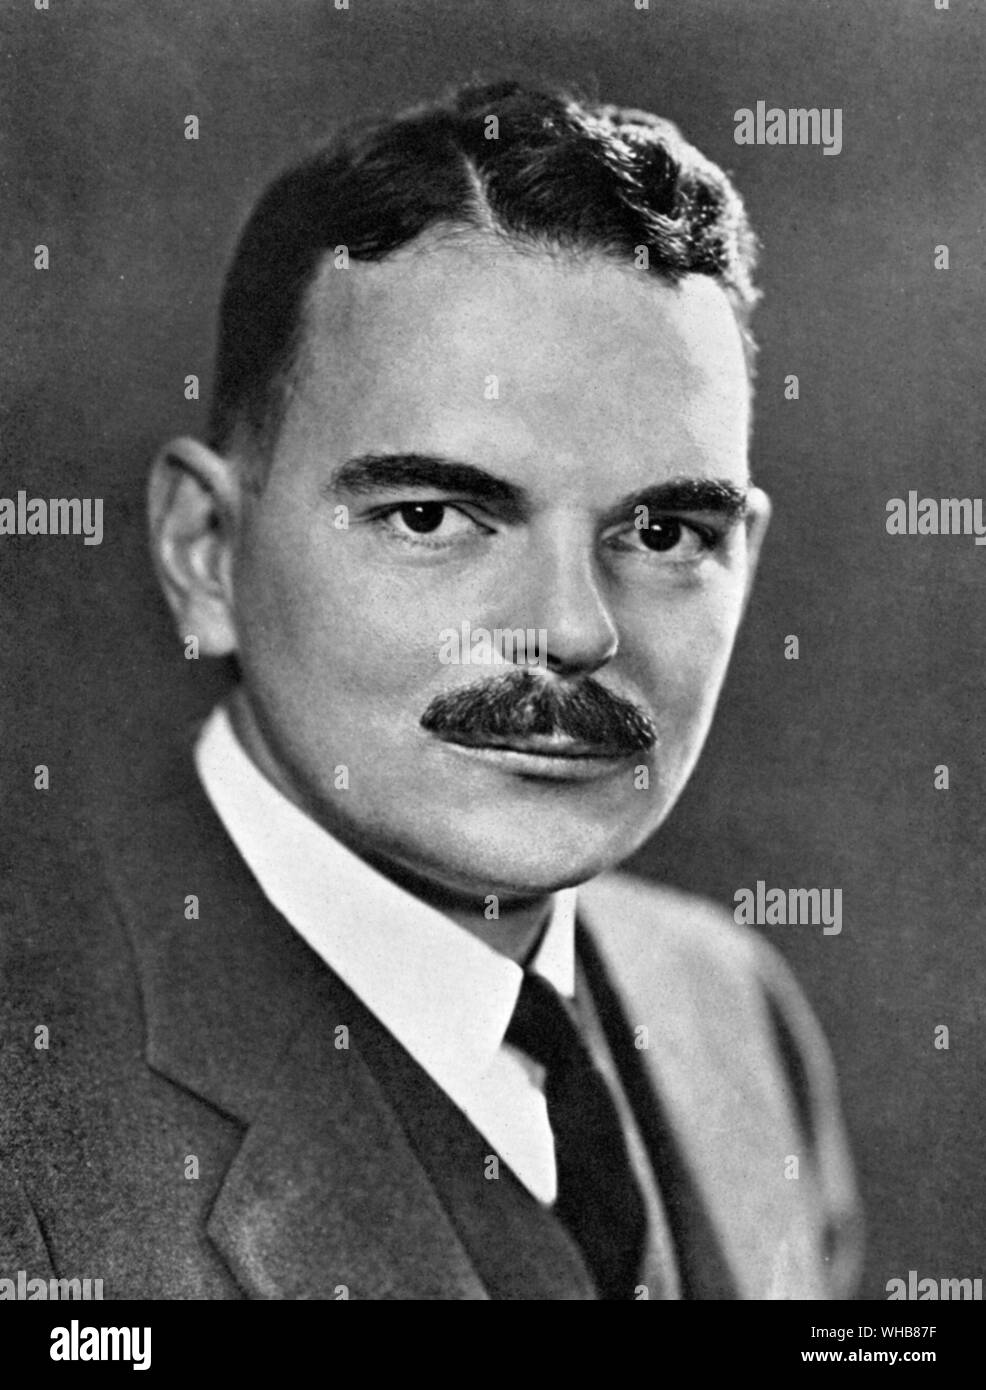 Thomas Edmund Dewey pista buster New York Avvocatura Distrettuale e candidato presidenziale 1948 Foto Stock